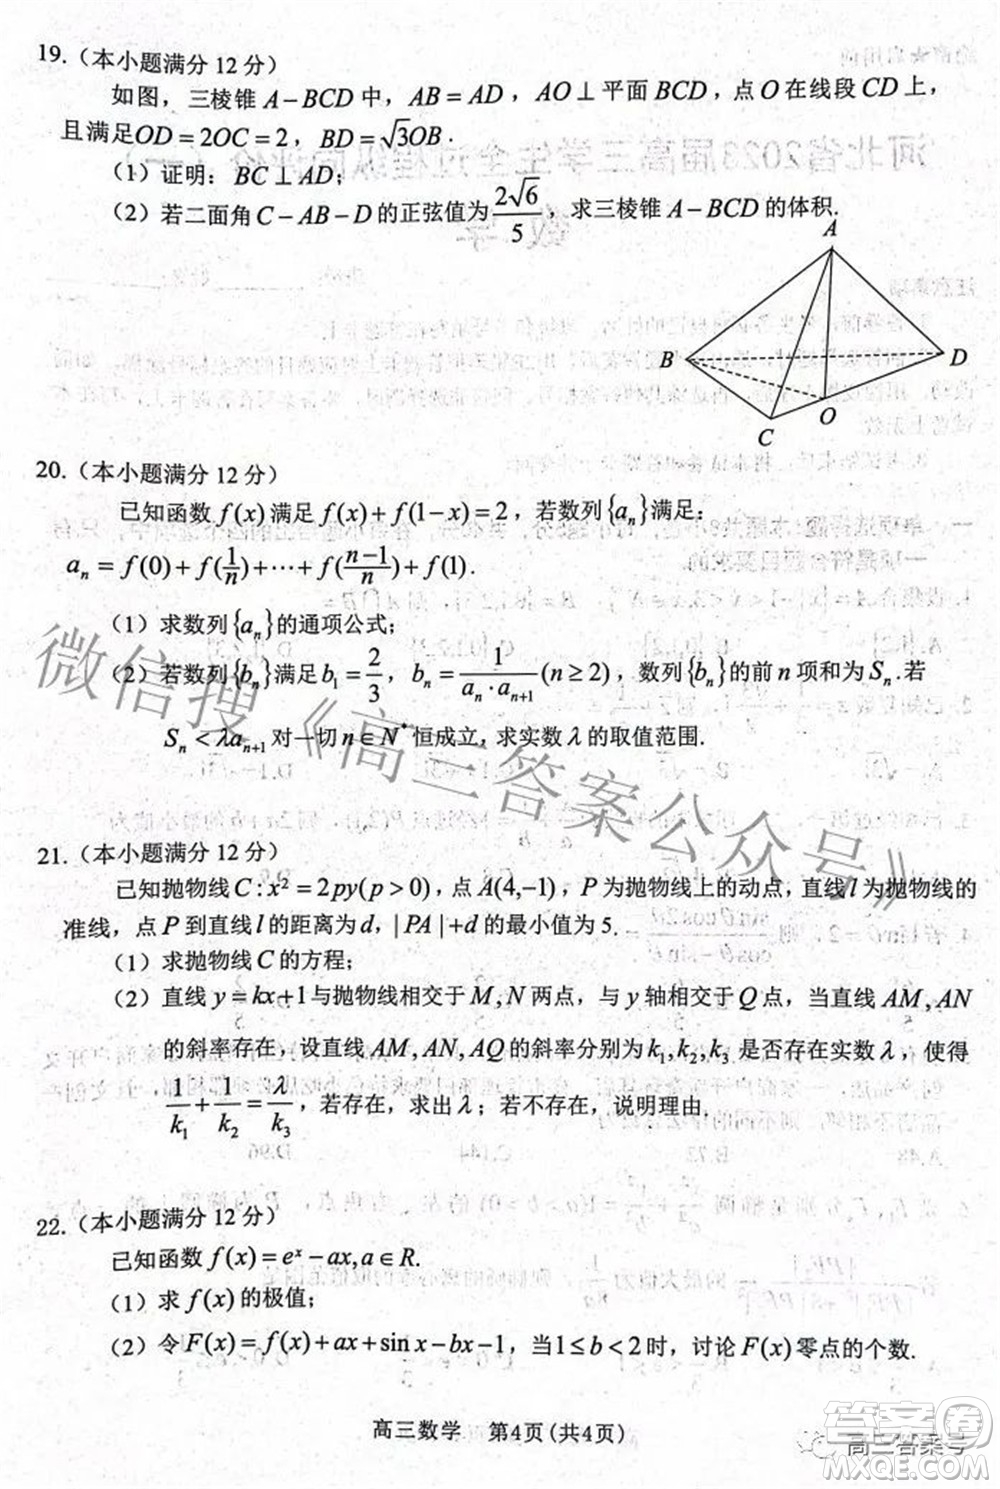 河北省2023届高三学生全过程纵向评价一数学试题及答案